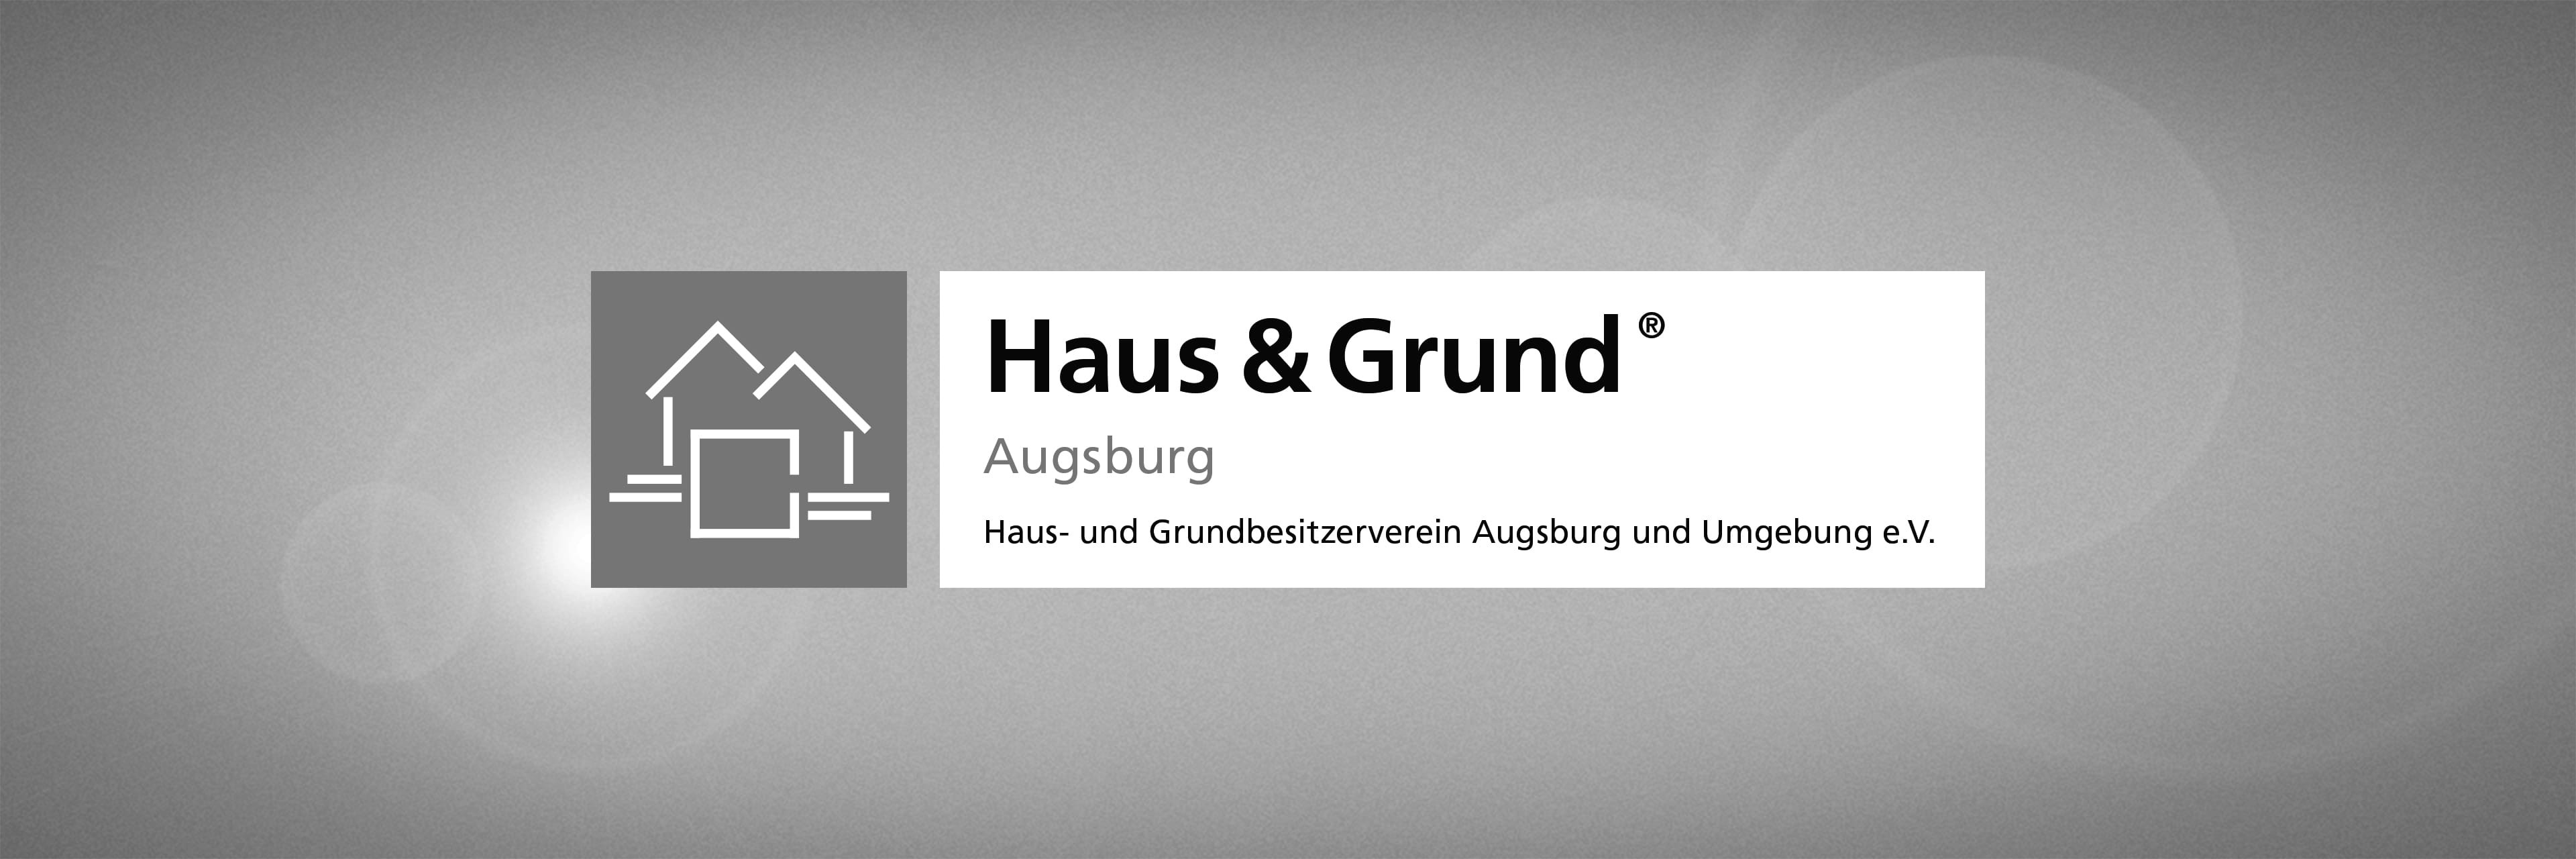 Haus Und Grund Augsburg
 Haus & Grund Augsburg vmm wirtschaftsverlag